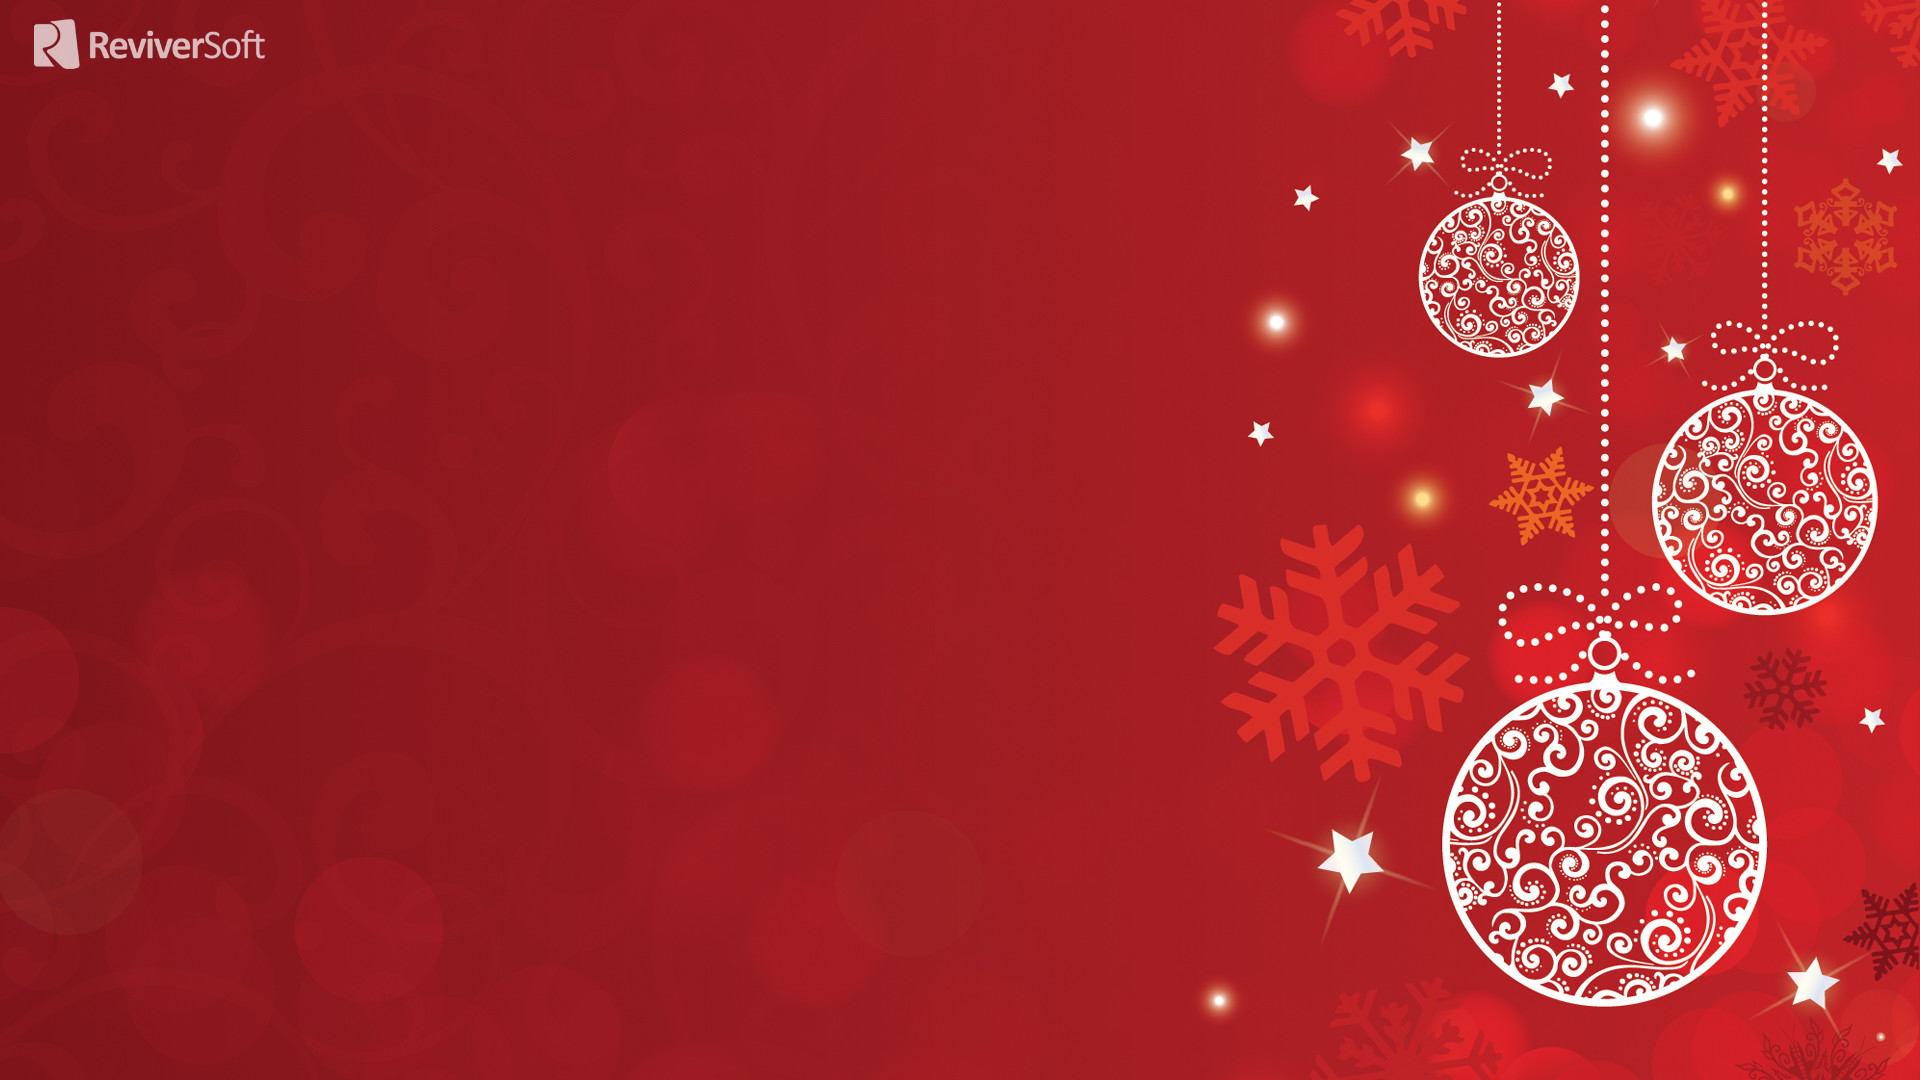 1920x1080 Christmas_wallpapers_White_Christmas_decorations_on_a_red_background ...  Christmas_wallpapers_White_Christmas_decorations_on_a_red_background .